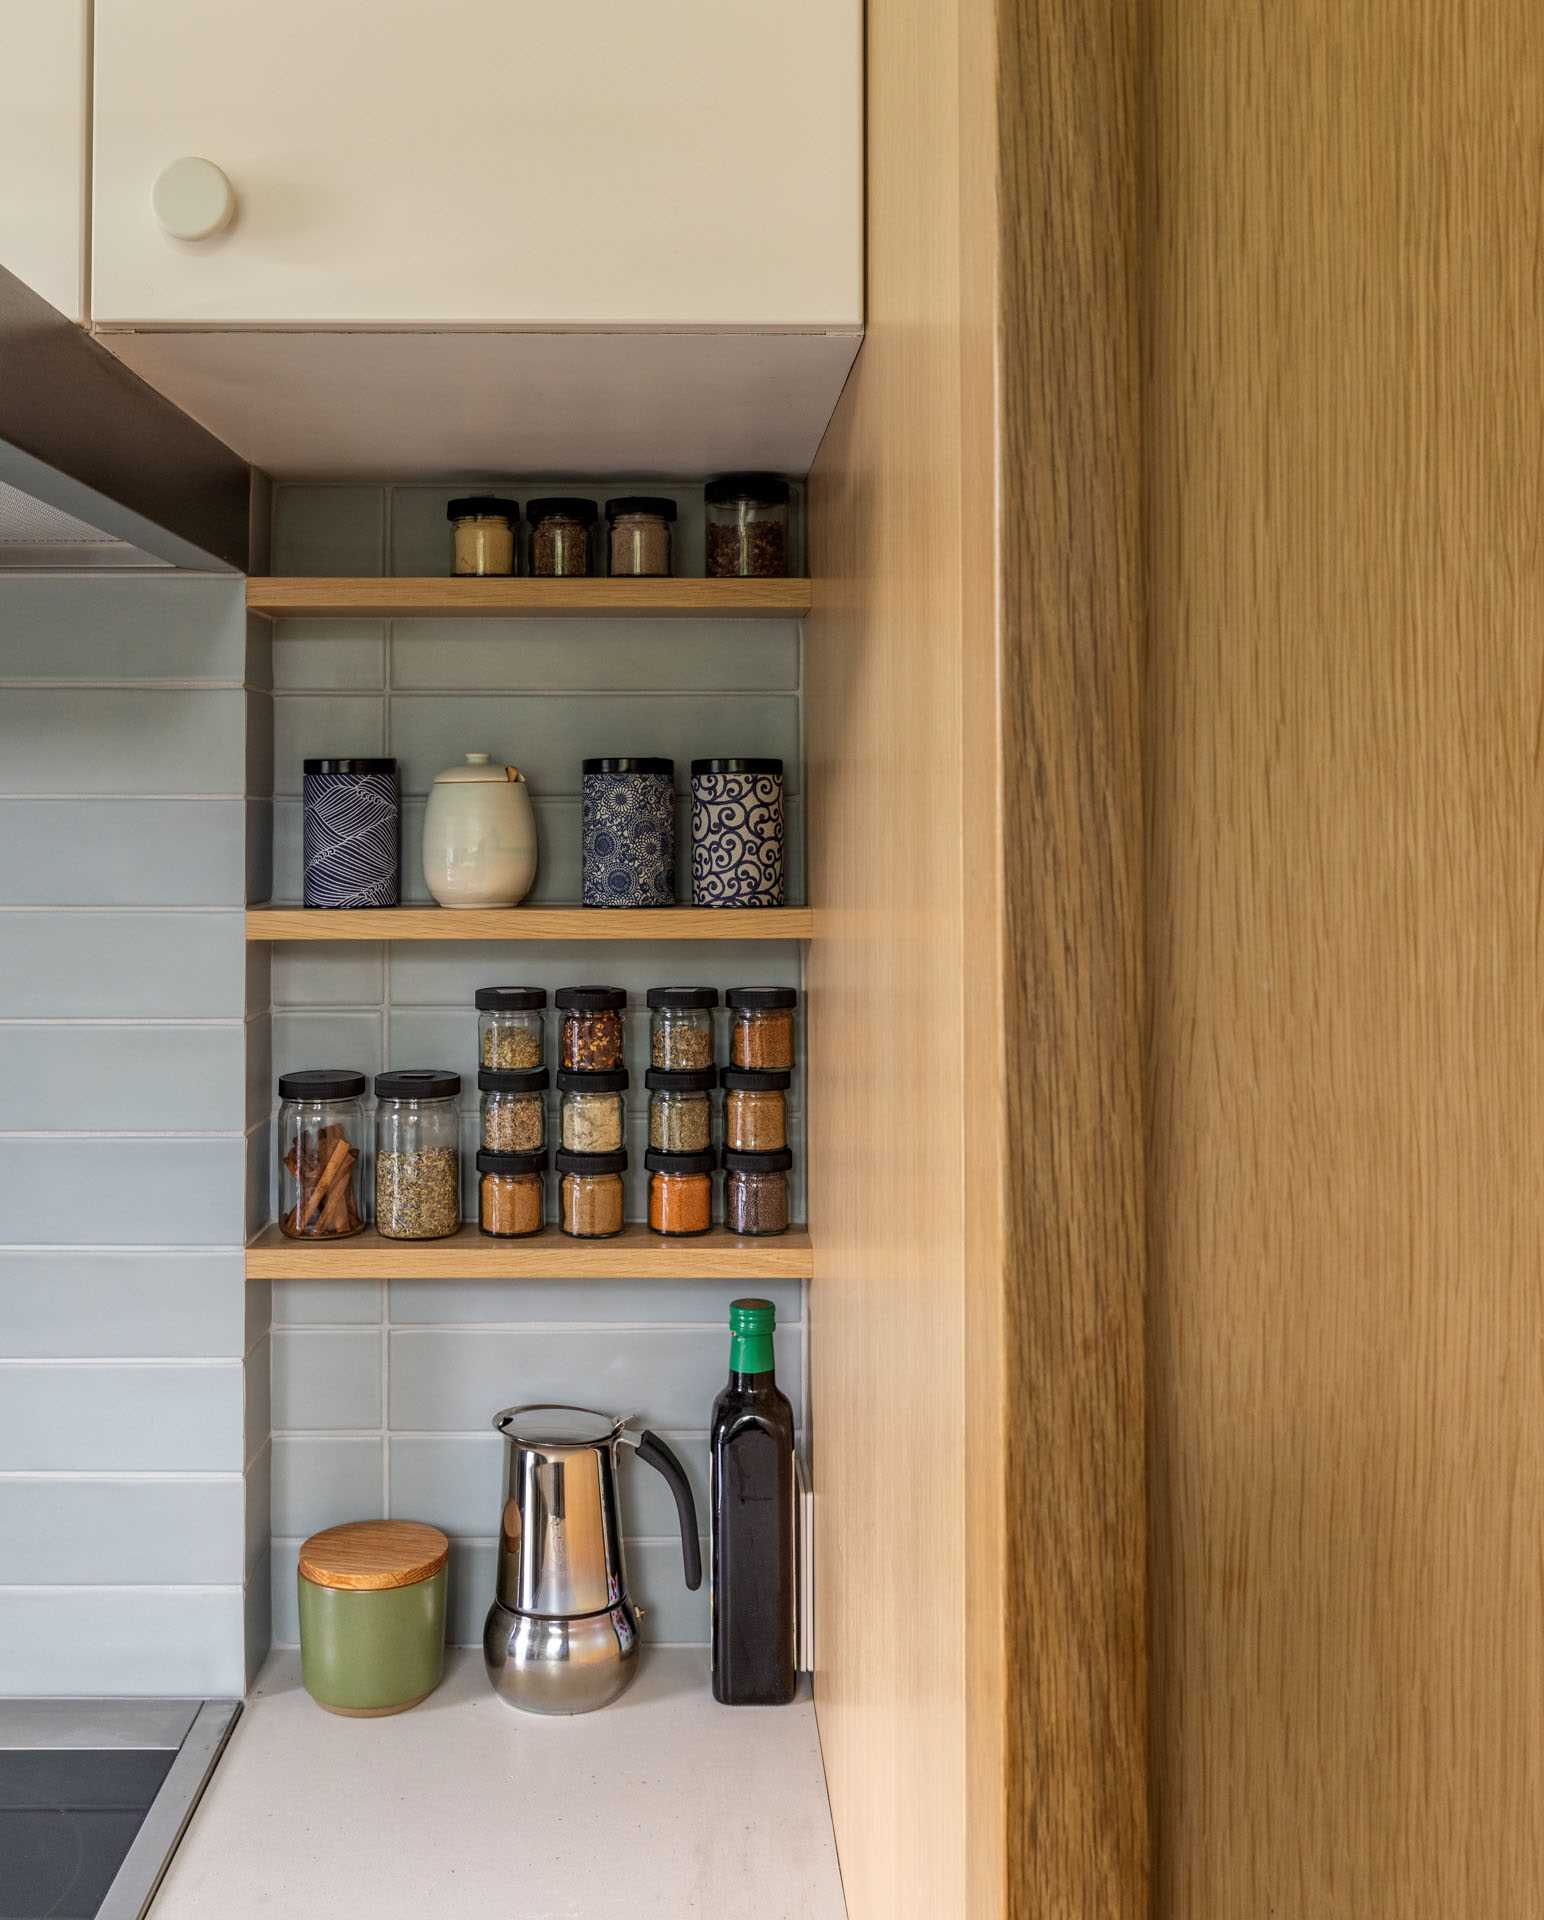 یک آشپزخانه مدرن با پالت رنگی ساده و خنثی.